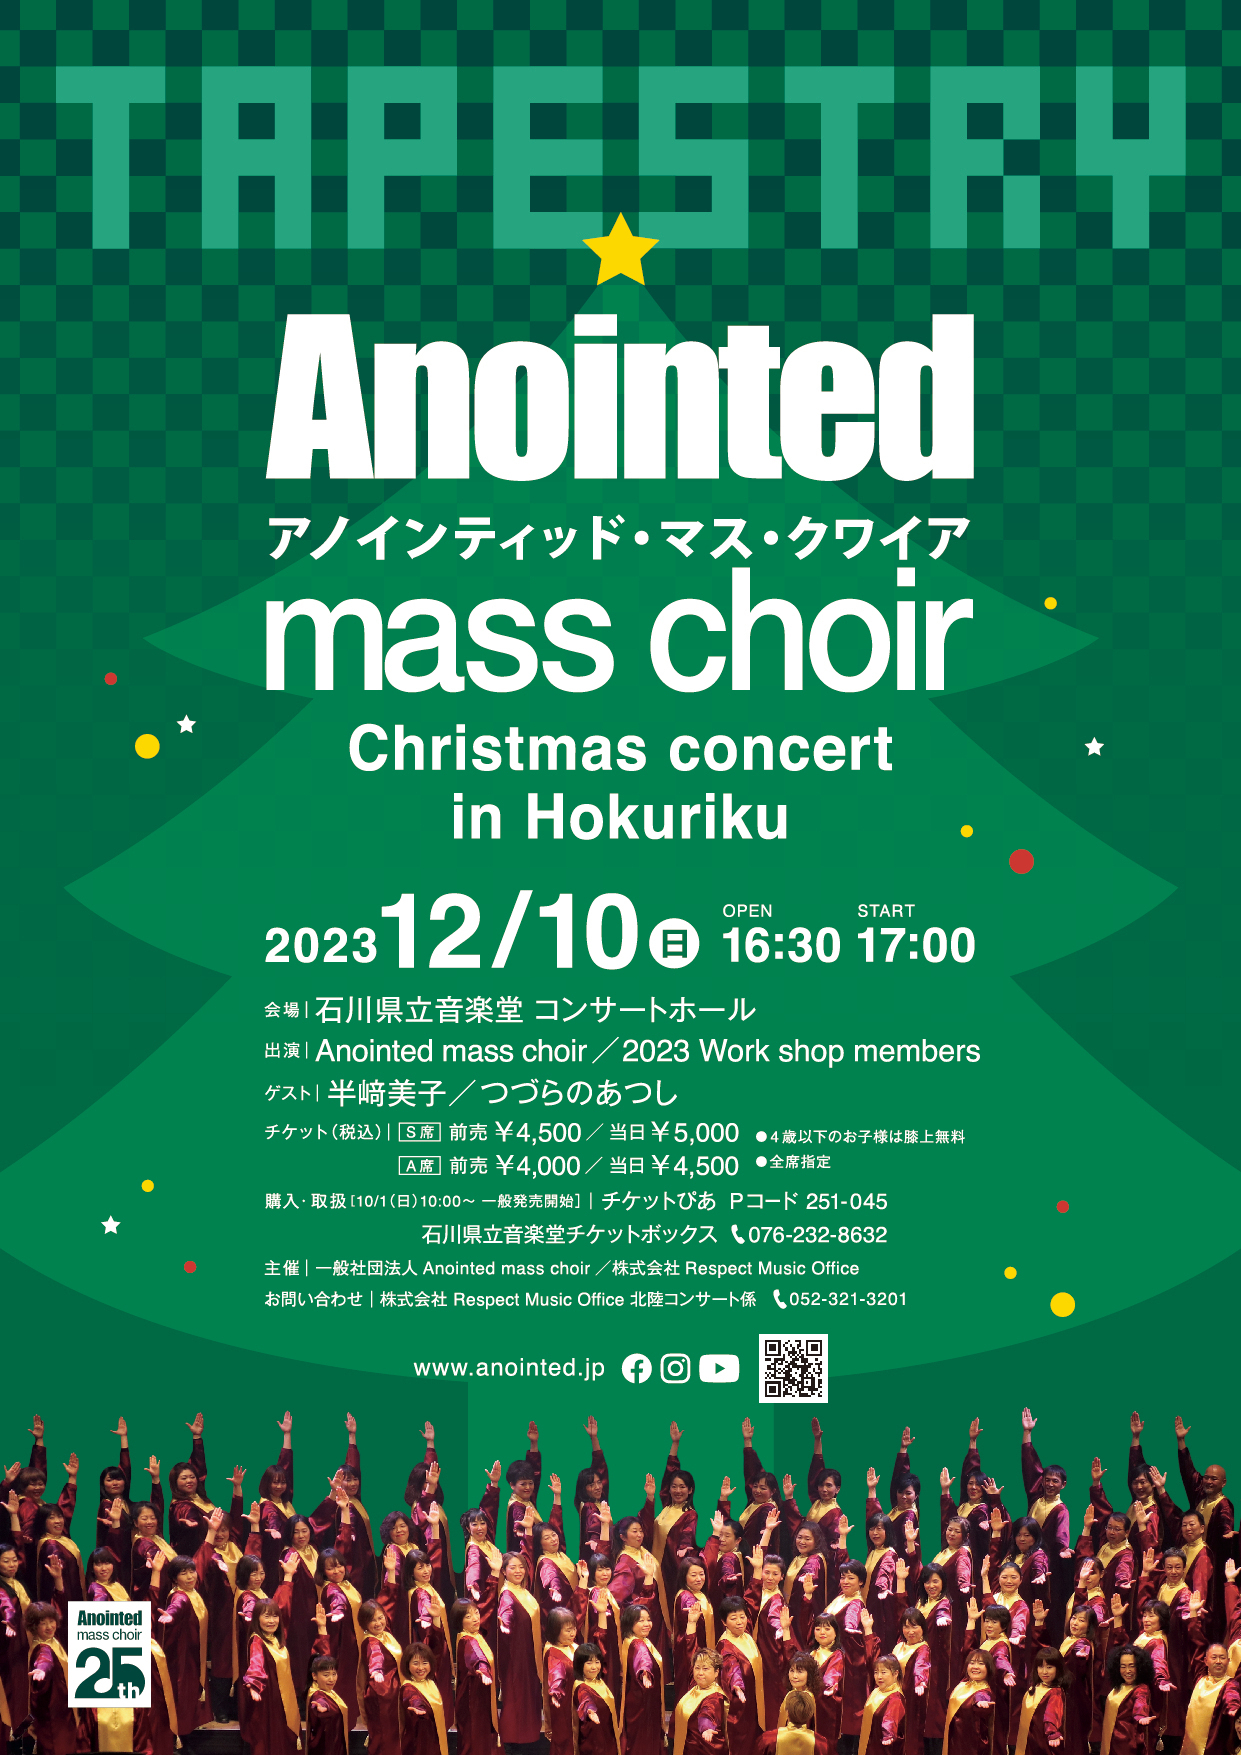 日本有数のゴスペルグループ「Anointed mass choir」の
クリスマスコンサートワークショップがスタート　
12月10日(日)開催のコンサートチケットも好評販売中！